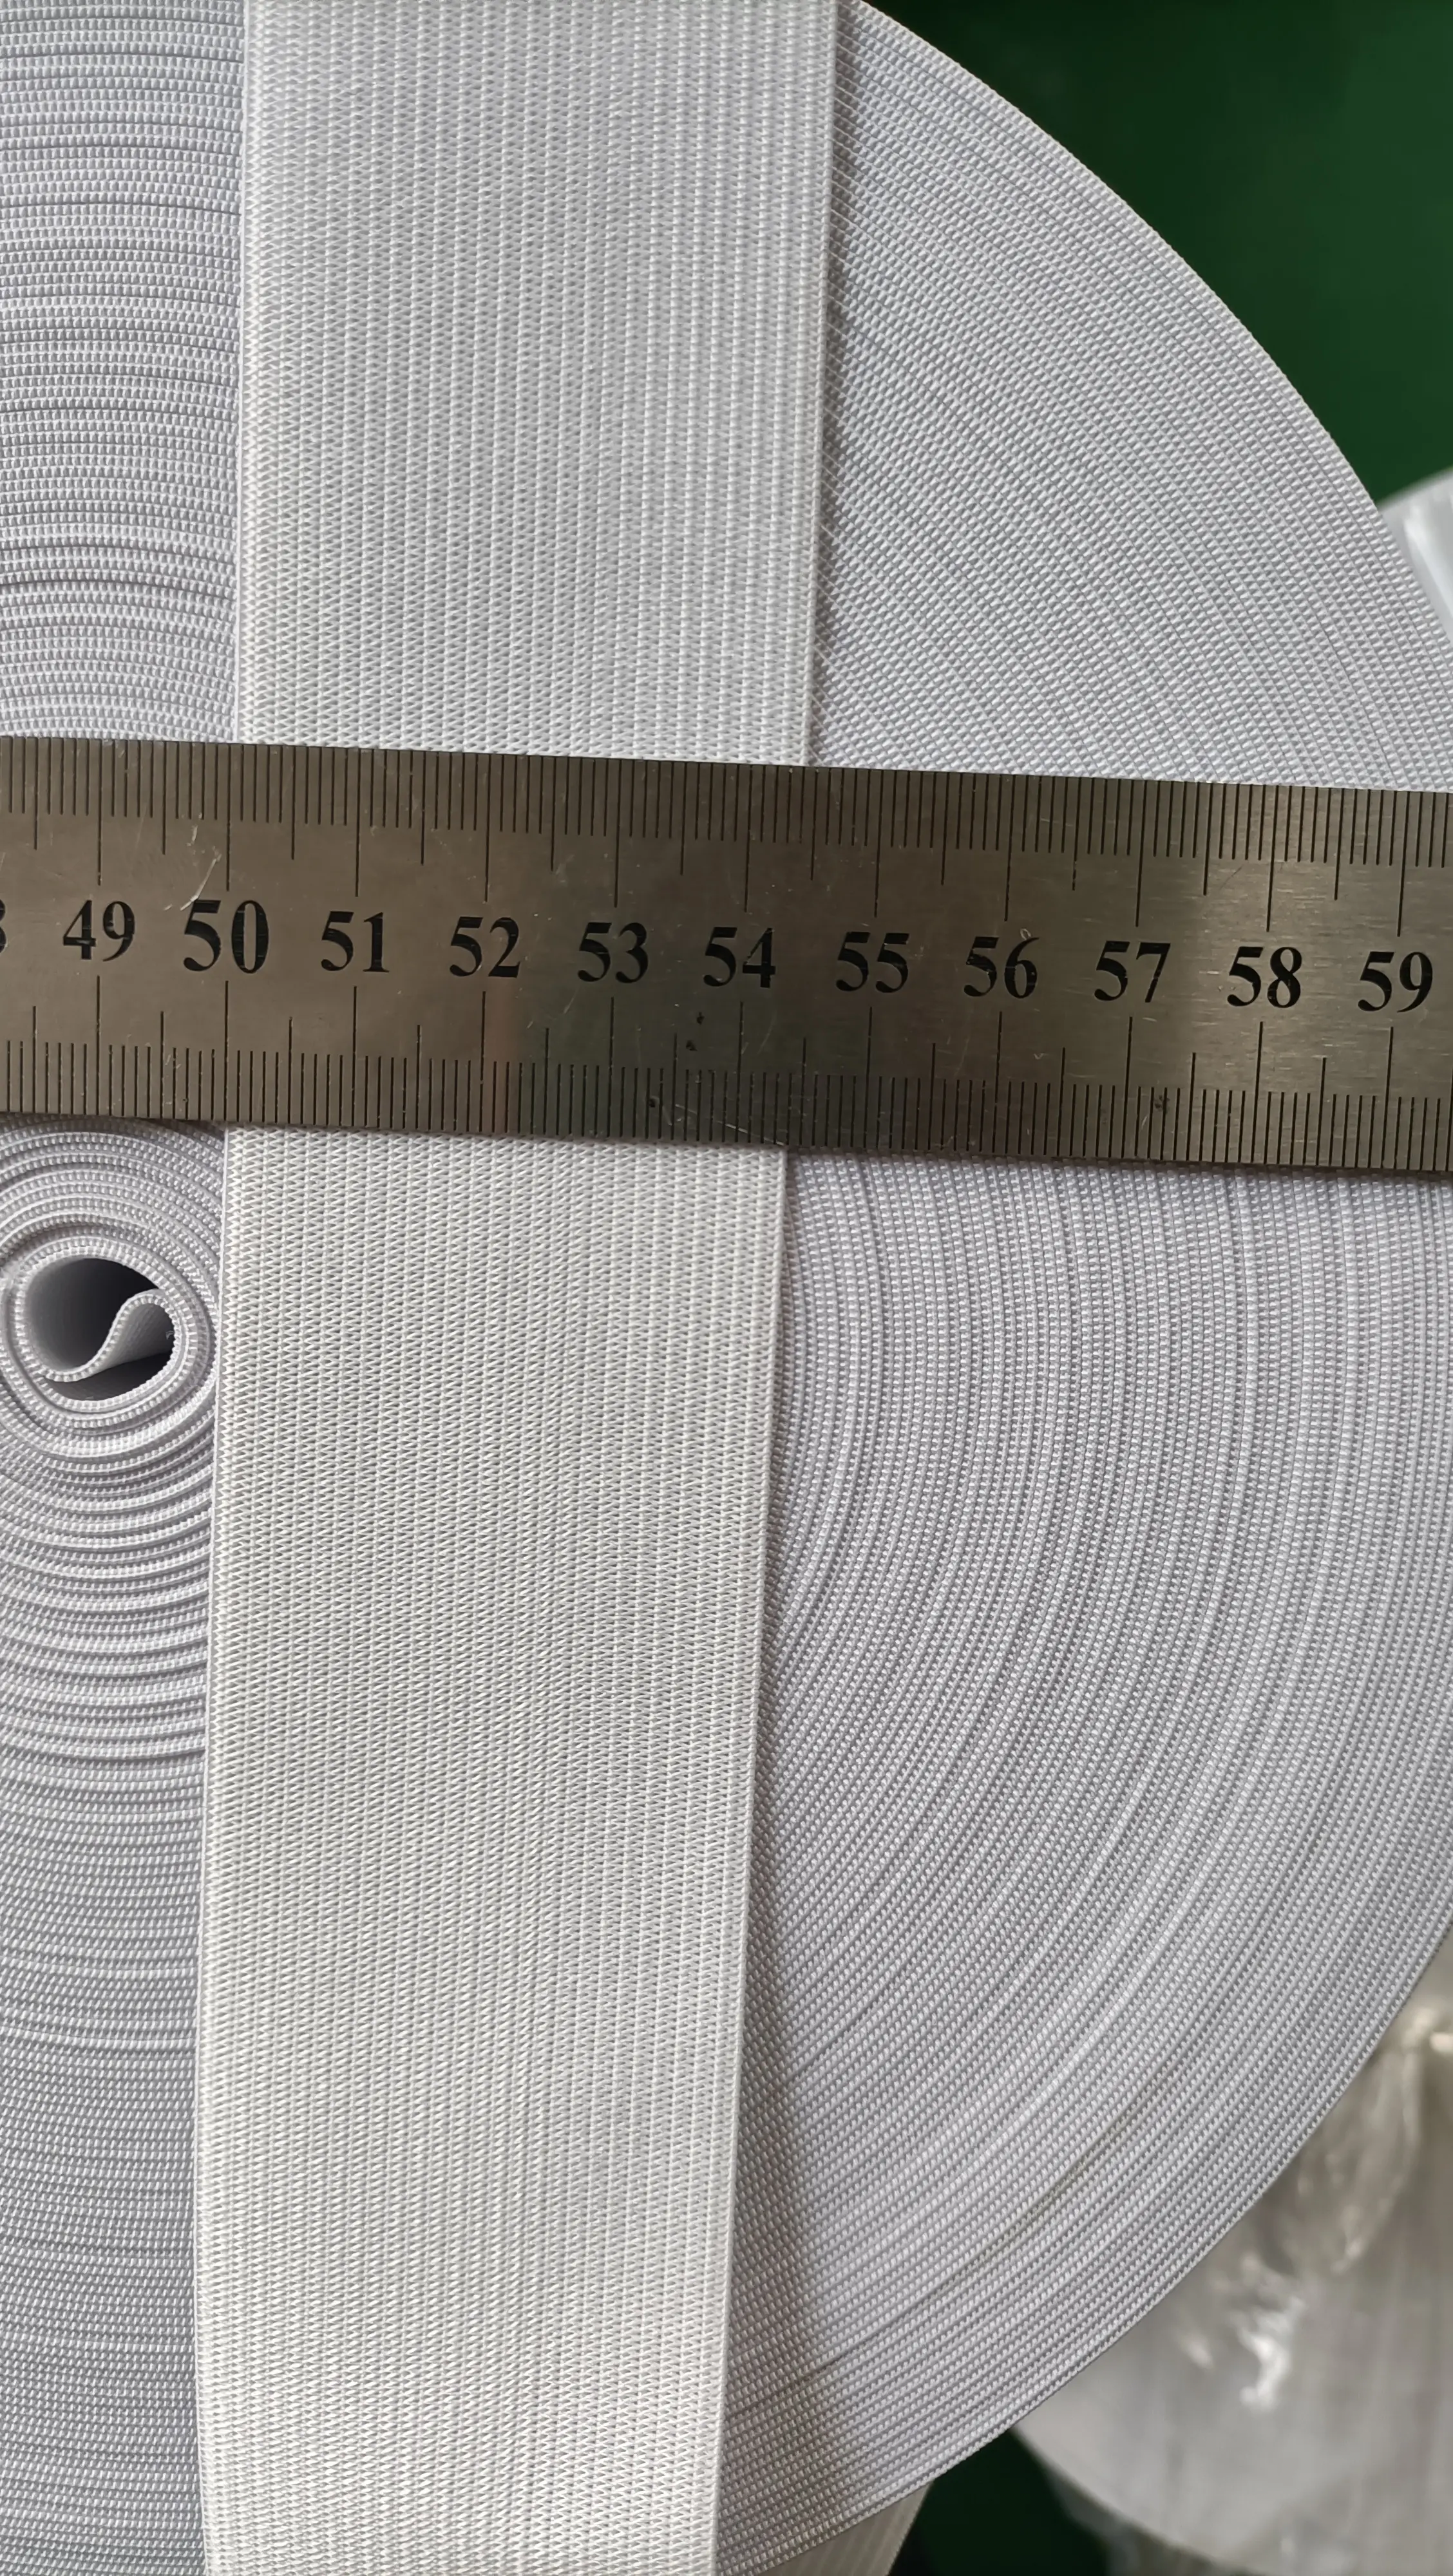 ความกว้าง1/1.5/ 2/2.5/3/4/5เซนติเมตรสีขาว/สีดำนุ่มถักถักเว็บวงยืดหยุ่นสำหรับเย็บเสื้อผ้าอุปกรณ์เสริม